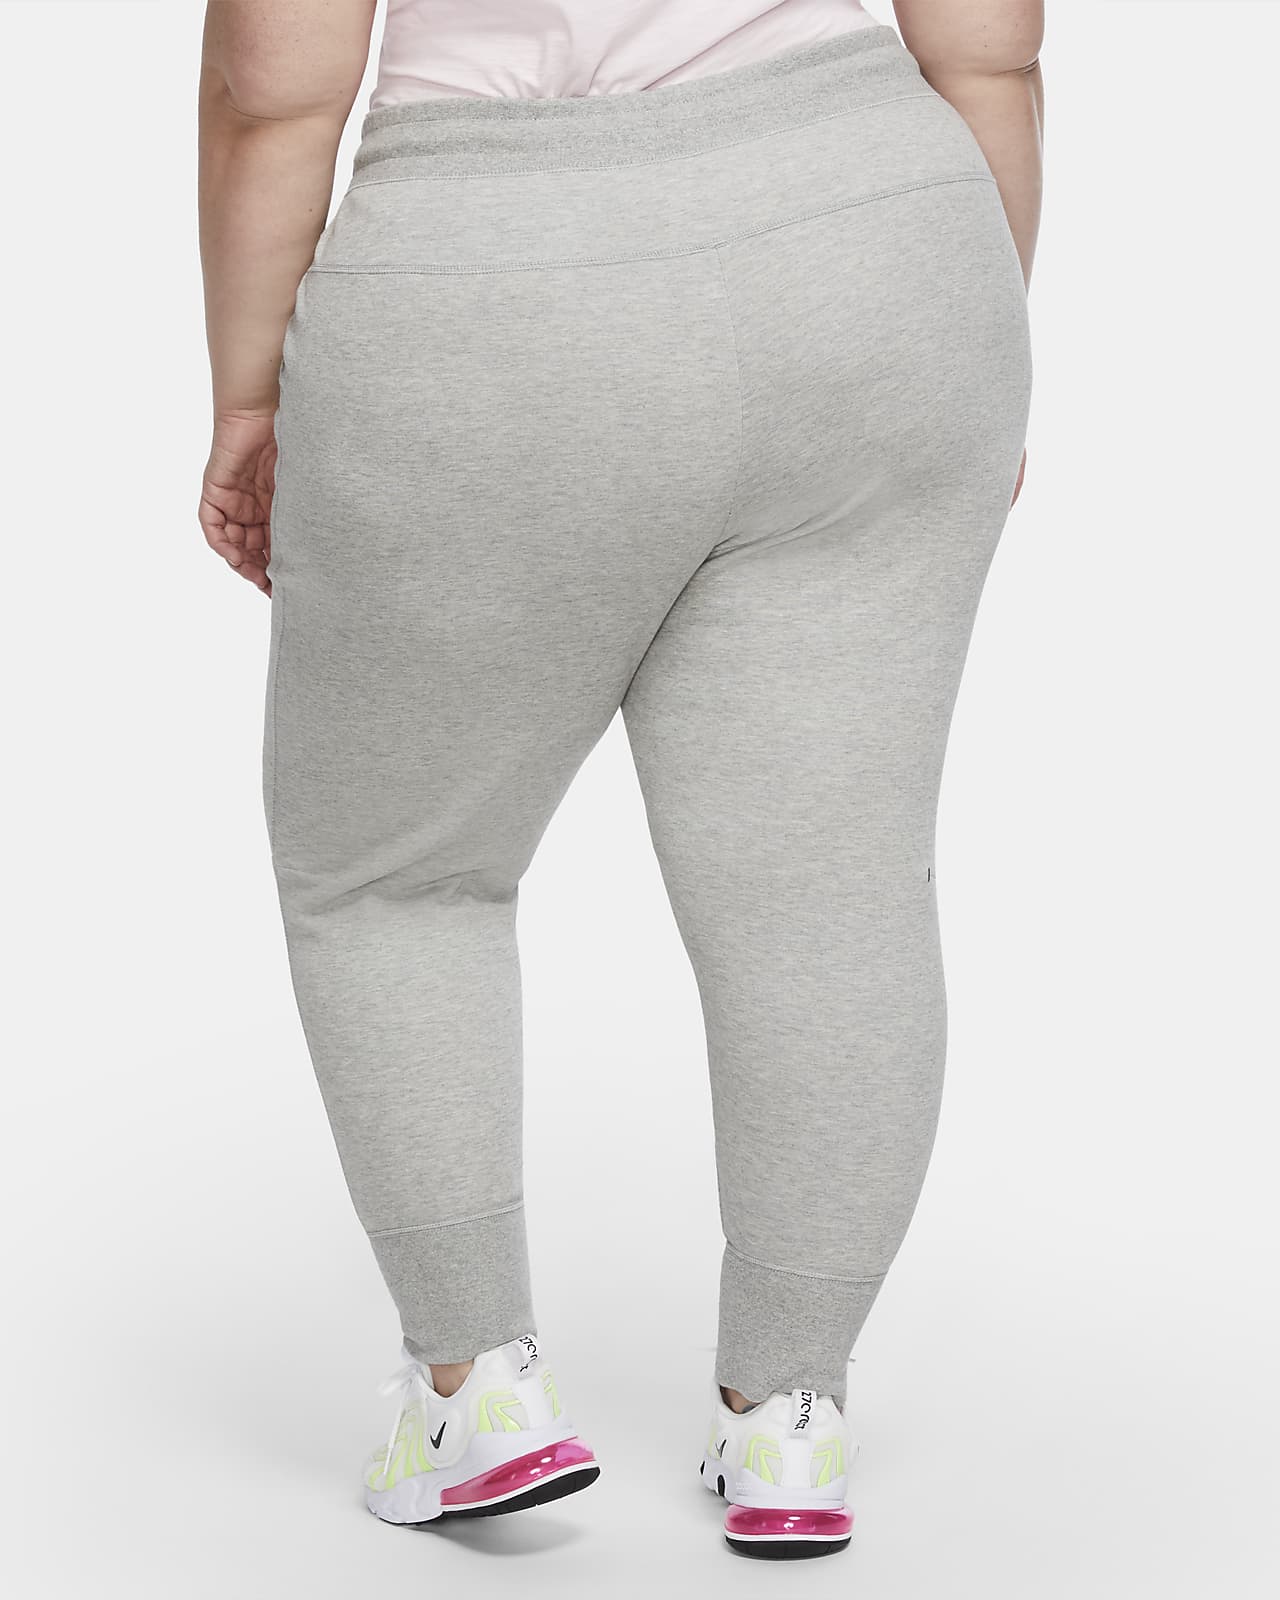 Werkwijze staart Wens Nike Sportswear Tech Fleece Women's Trousers (Plus Size). Nike LU